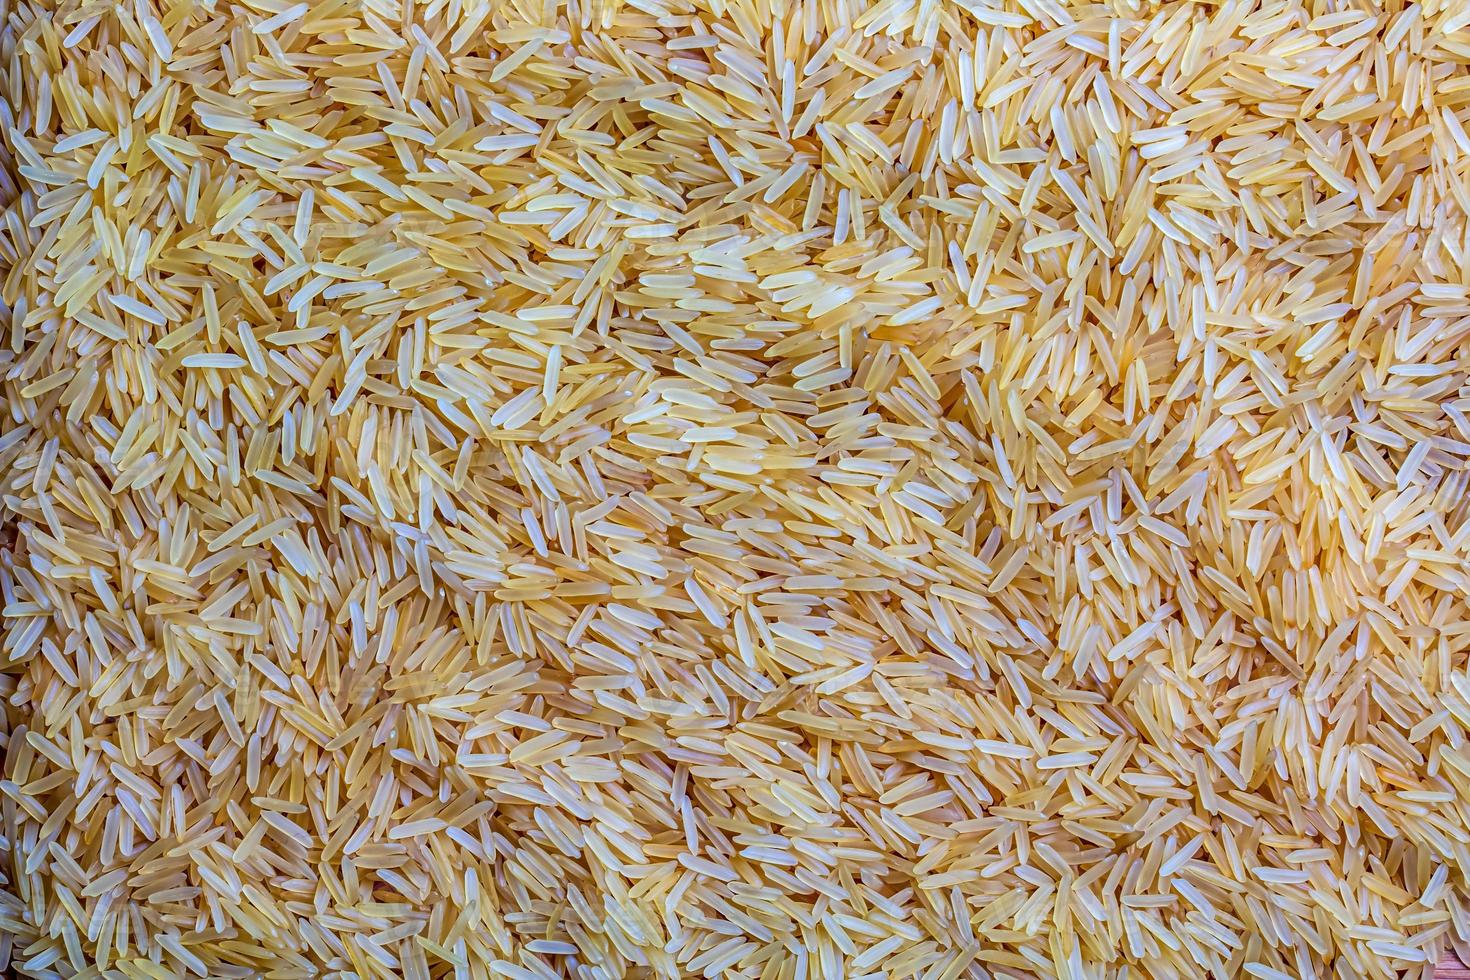 achtergrond van lang graan voorgekookt ongekookt rijst. rijst- grutten net zo achtergrond en textuur. foto